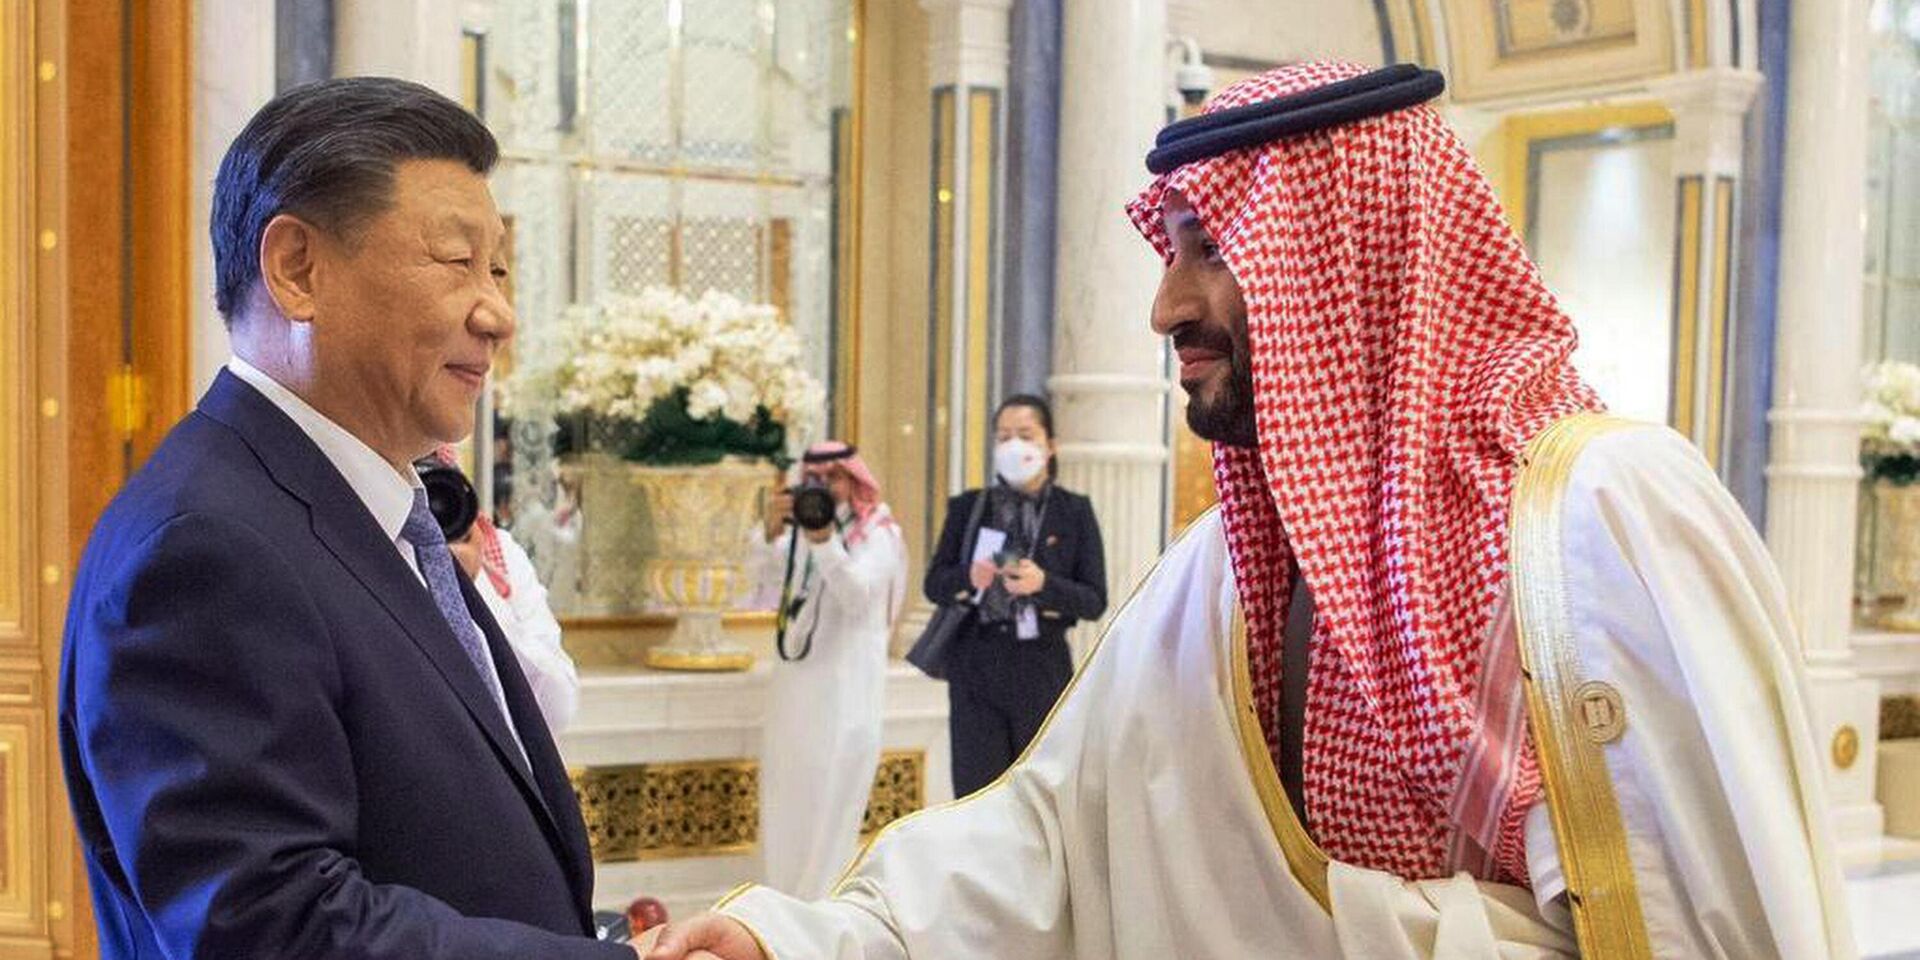 Председатель КНР Си Цзиньпин и наследный принц Саудовской Аравии Мухаммед бен Салман во время встречи в Эр-Рияде. 9 декабря 2022 года - ИноСМИ, 1920, 14.12.2022